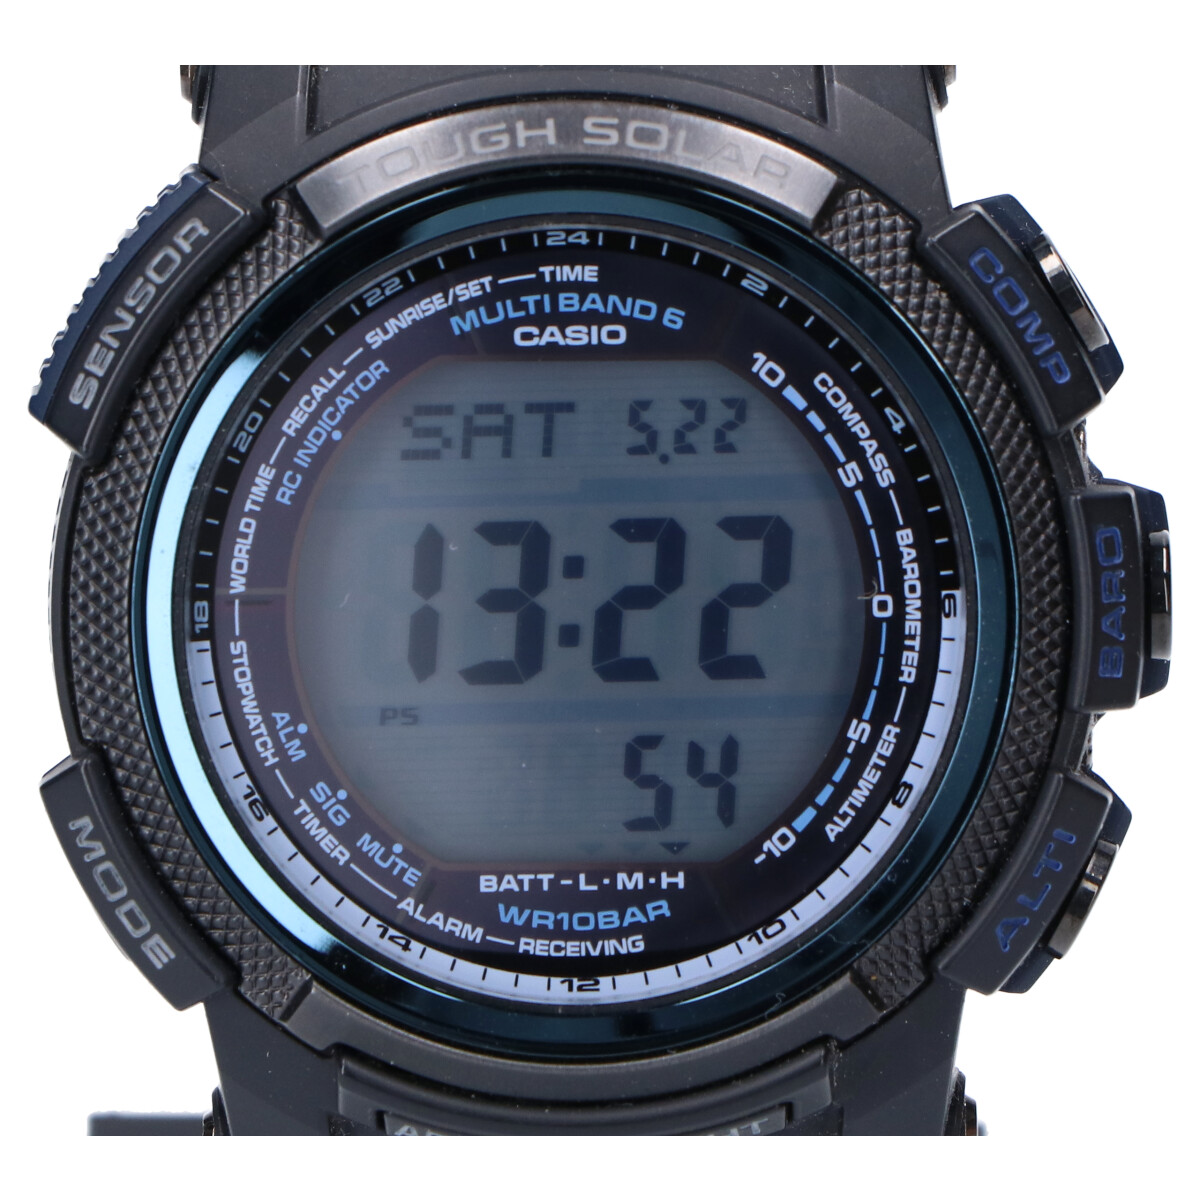 カシオのPRW-2000Y-1JF PRO TREKプロトレック デジタル ソーラー電波時計の買取実績です。